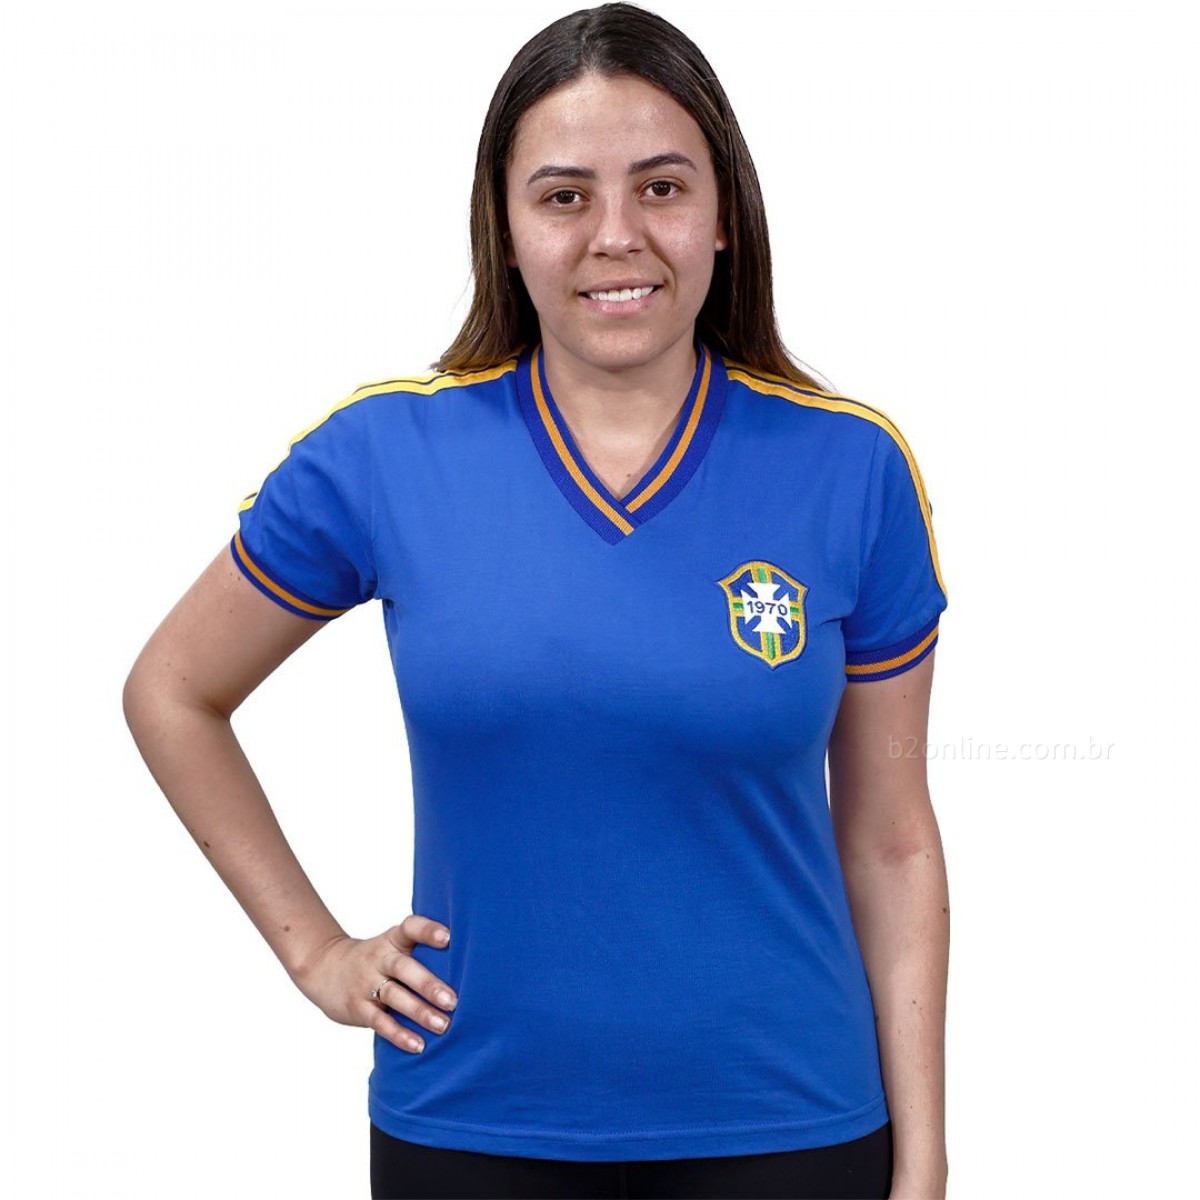 Camisas e camisetas Femininas no Brasil